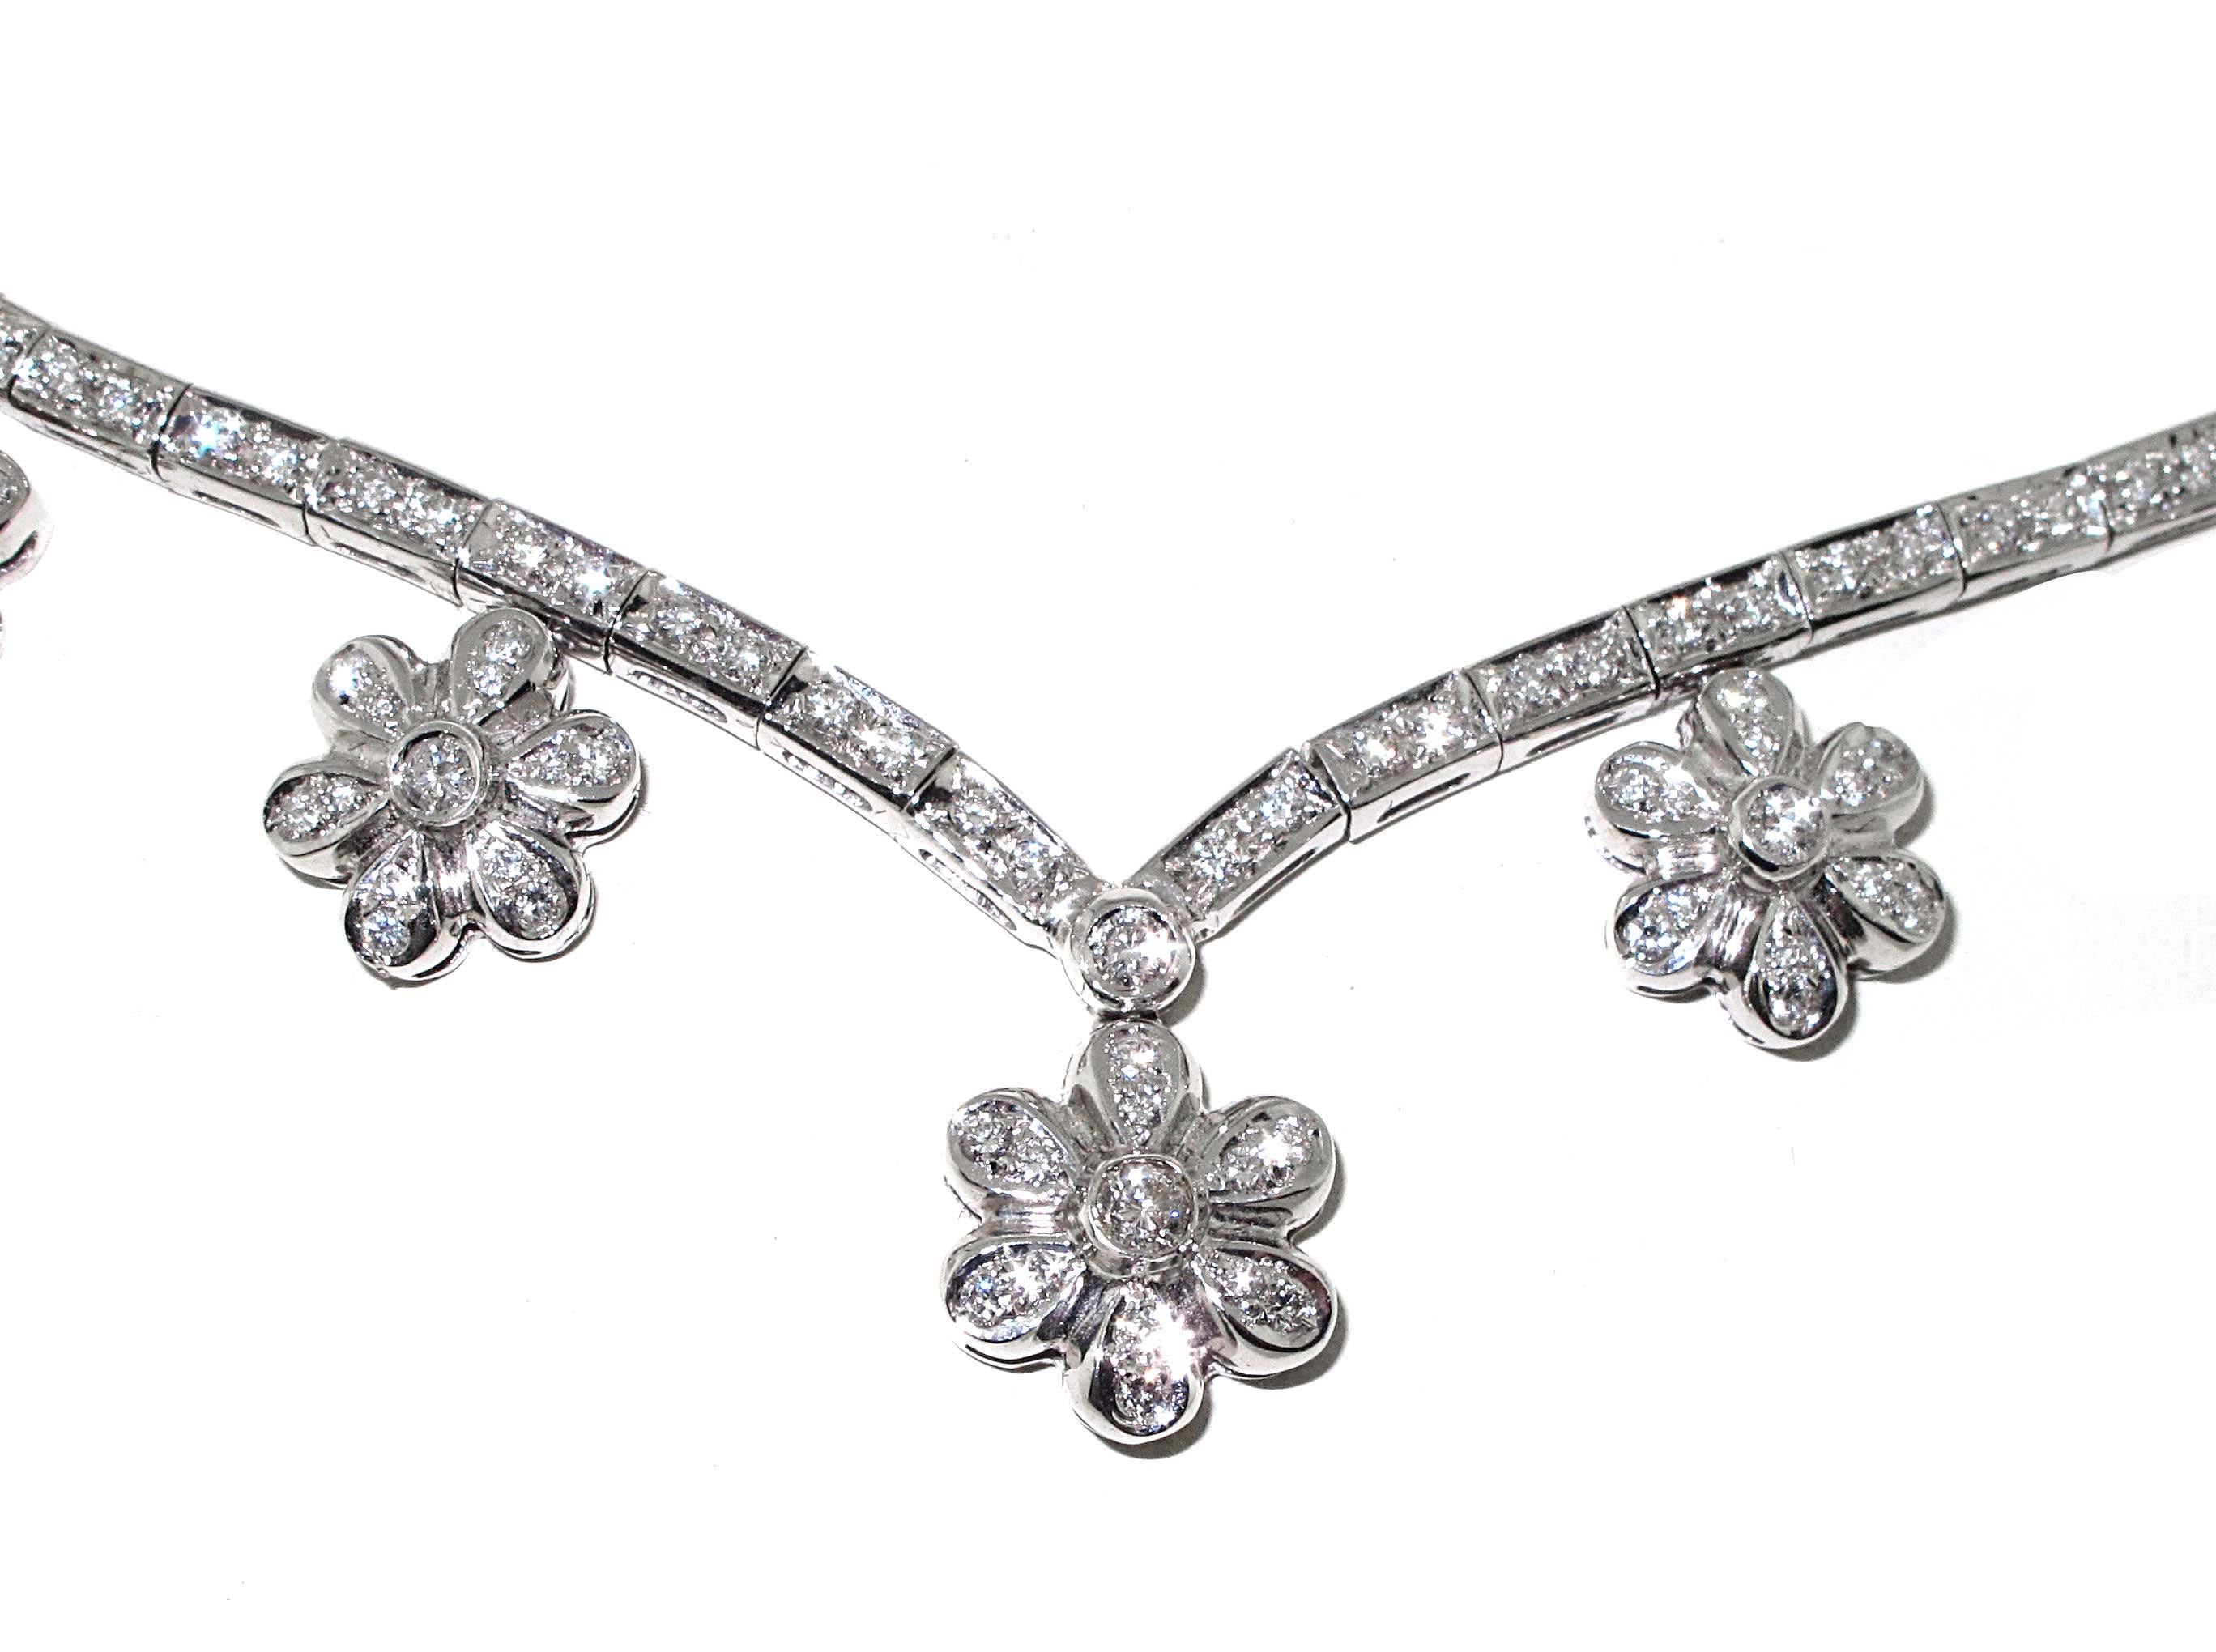 Eine ausgezeichnete Halskette für einen Abend in der Stadt. Mehr als 4 Karat weißer Diamanten, gefasst in 18-karätigem Weißgold, machen diese Blumenkette so einzigartig. Sehr schön am Halsausschnitt, weil er in der Mitte zu einem V wird. Auf jeder